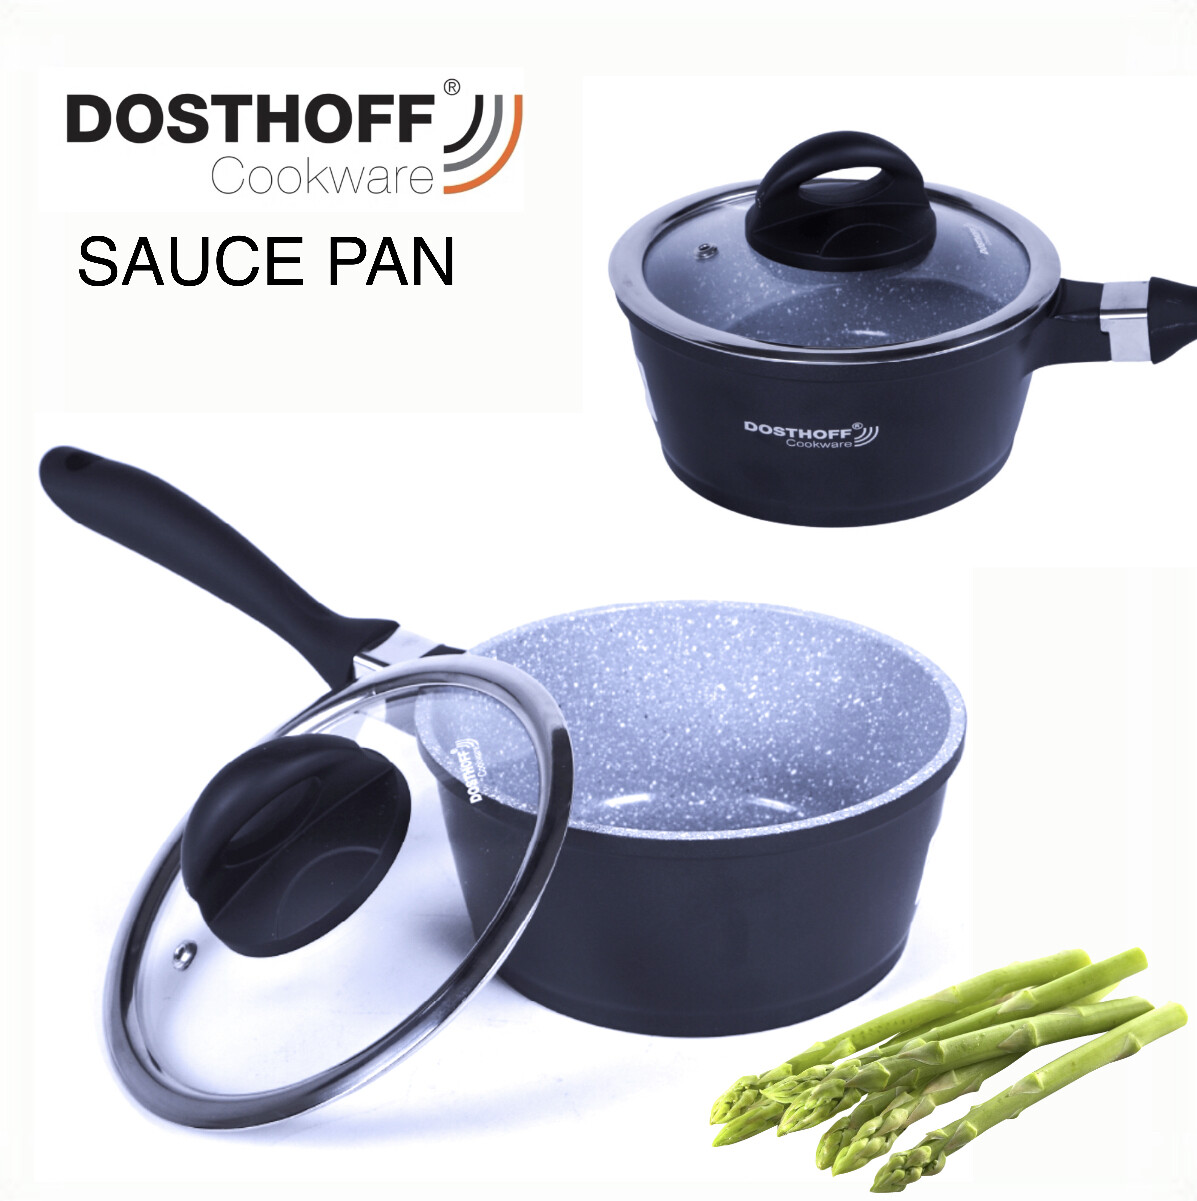 DOSTHOFF Sauce Pan